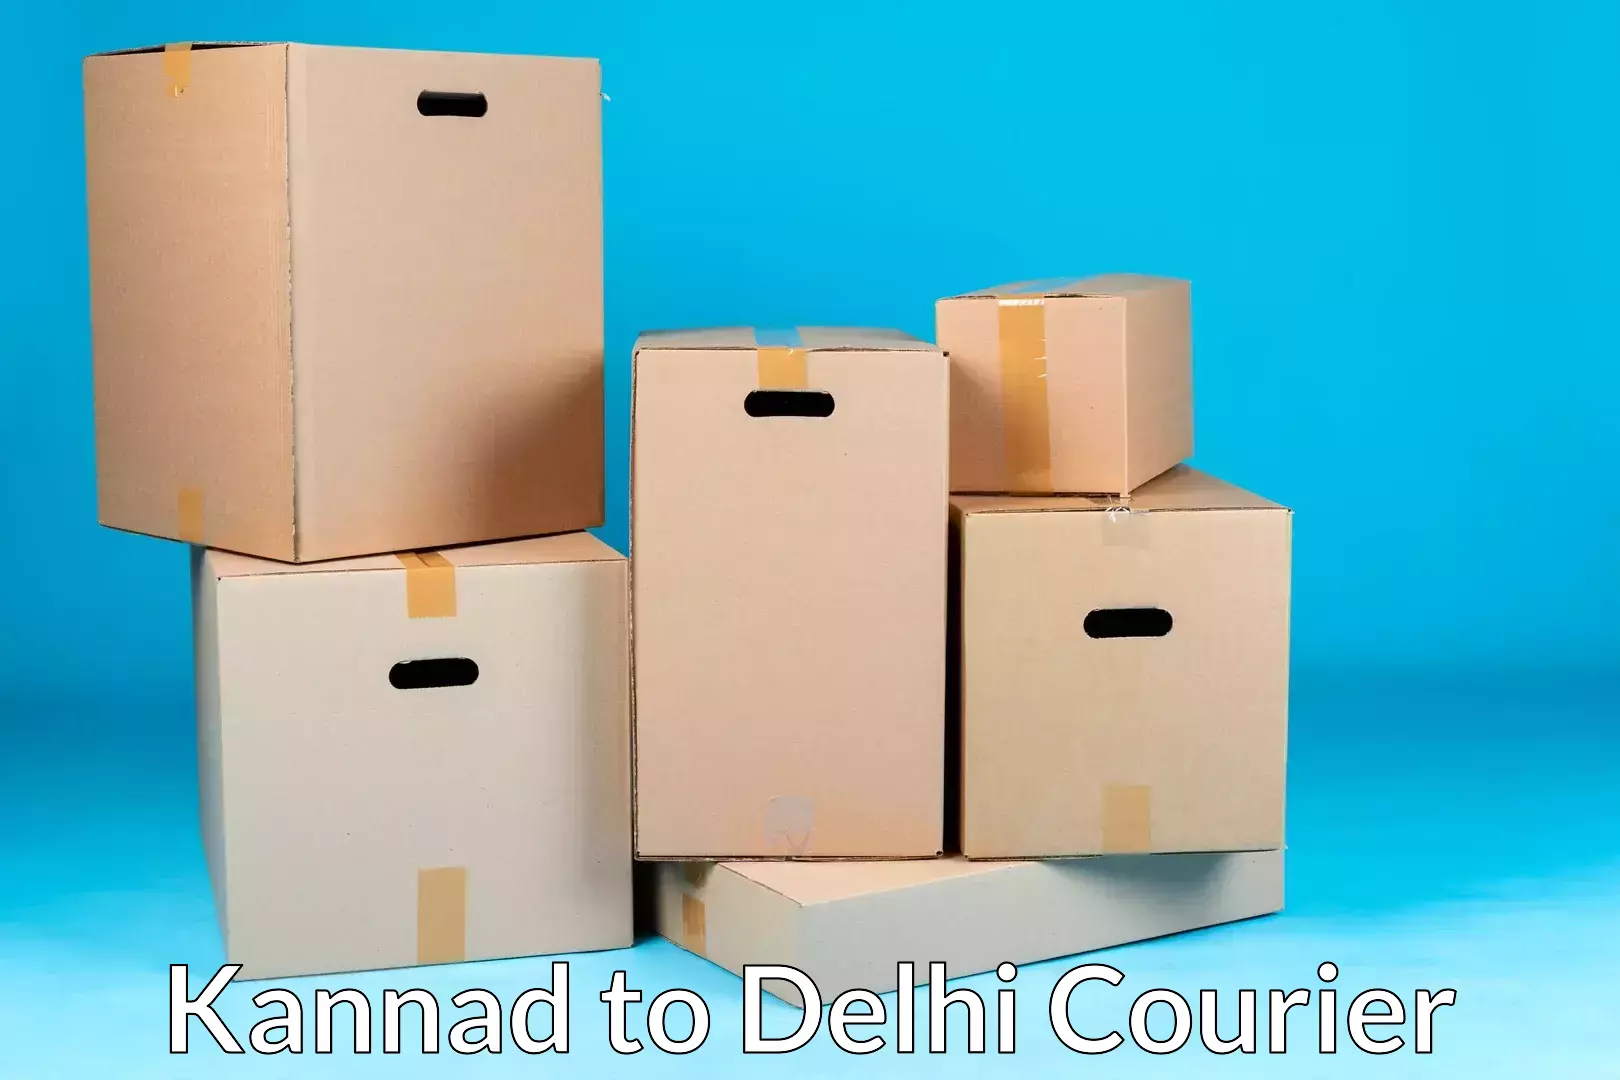 Premium moving services Kannad to Jamia Millia Islamia New Delhi